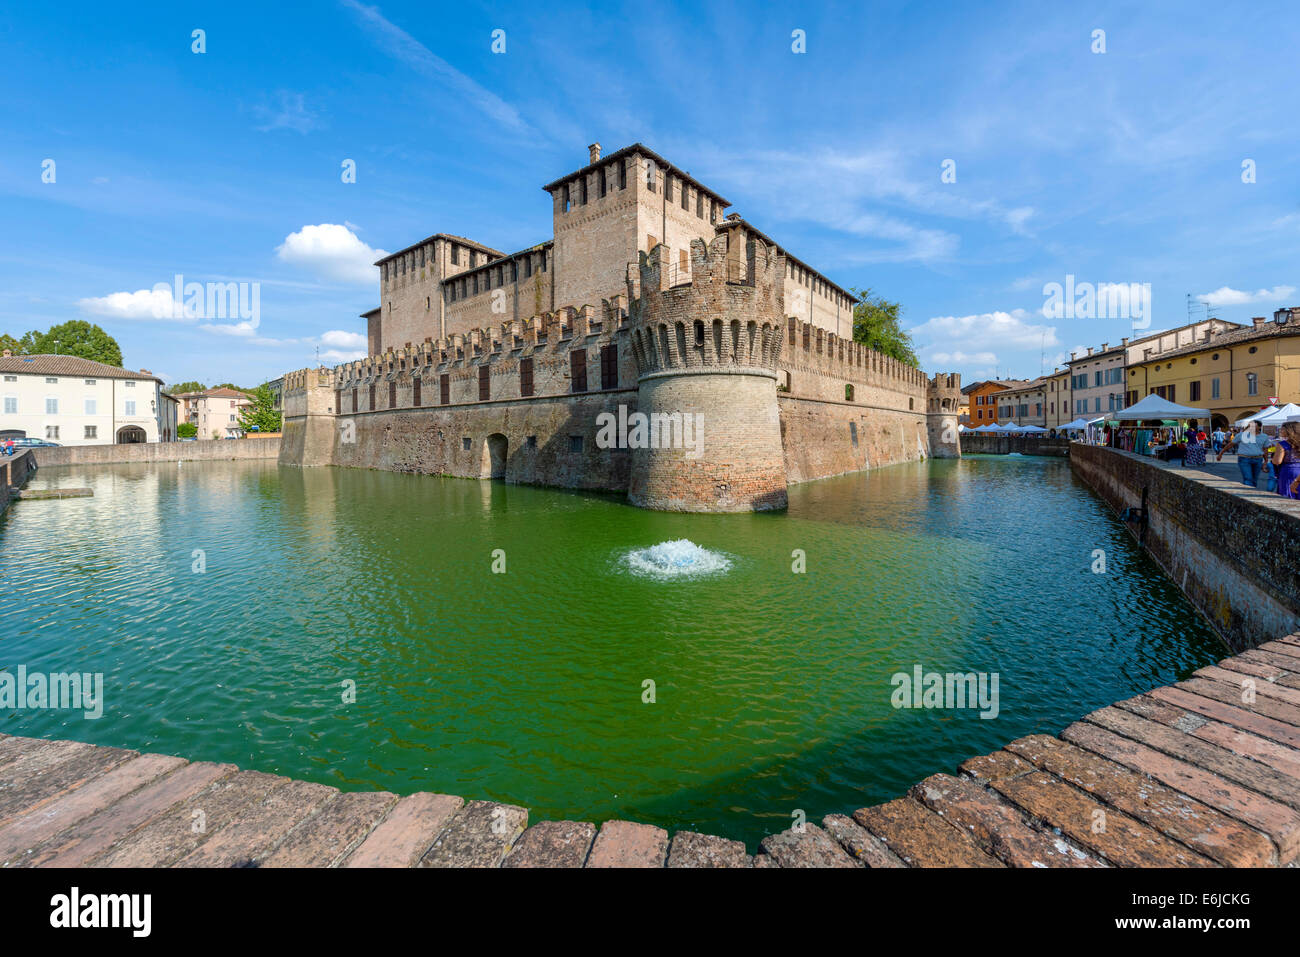 Sanvitale Castle (Rocca Sanvitale) in the centre of the medieval old town of Fontanellato, near Parma, Emilia Romagna, Italy Stock Photo